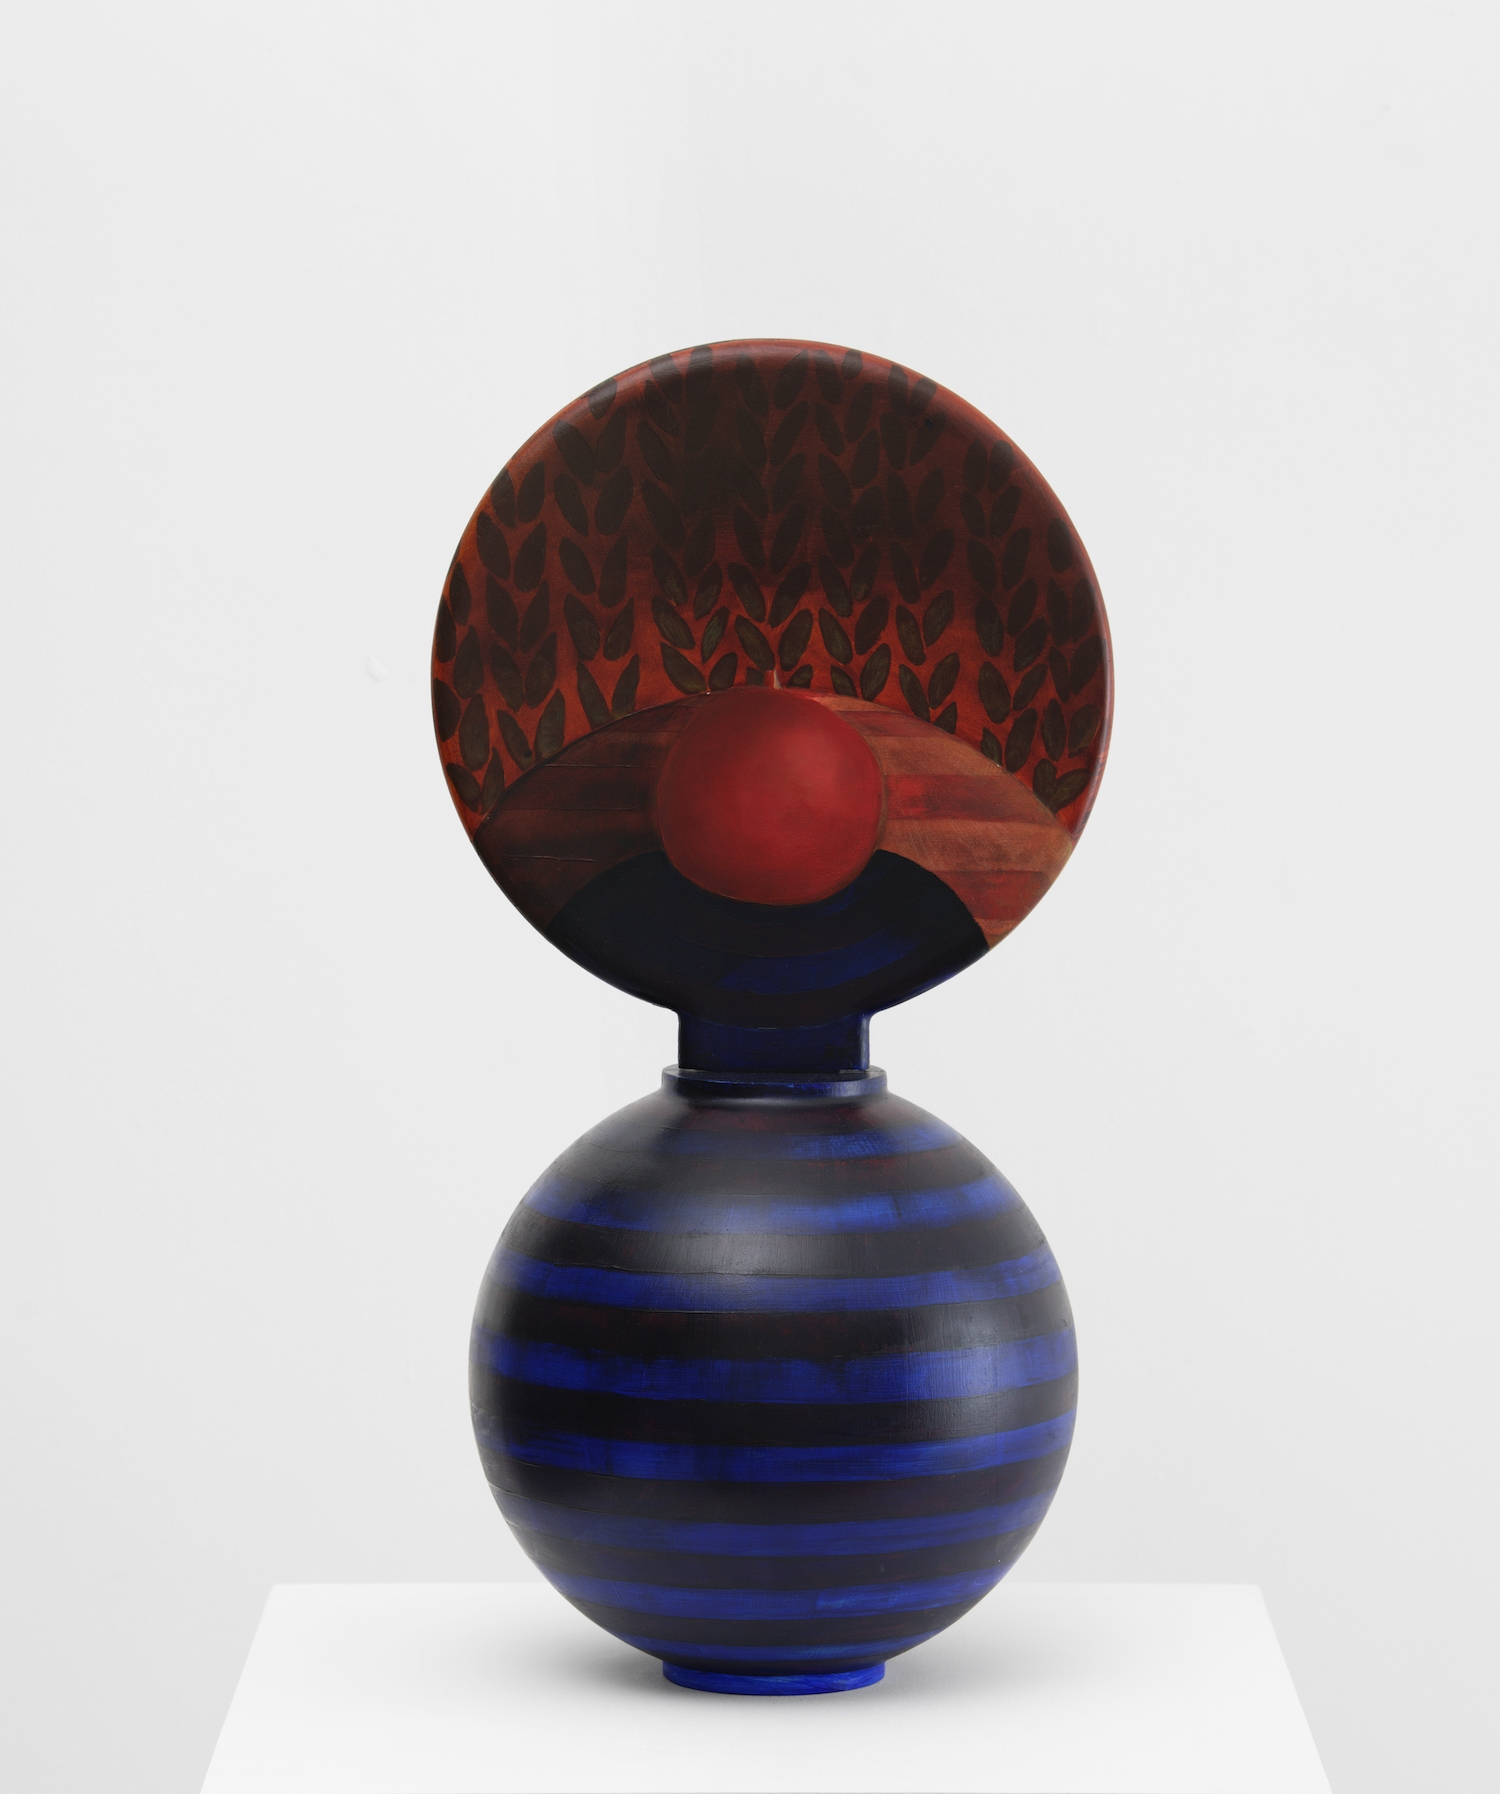 Palazzo Colona (Vase in Vase series), 2022-2023, Oil on wood, 64 Ã— 43 Ã— 30 cm. Photo: AurÃ©lien Mole